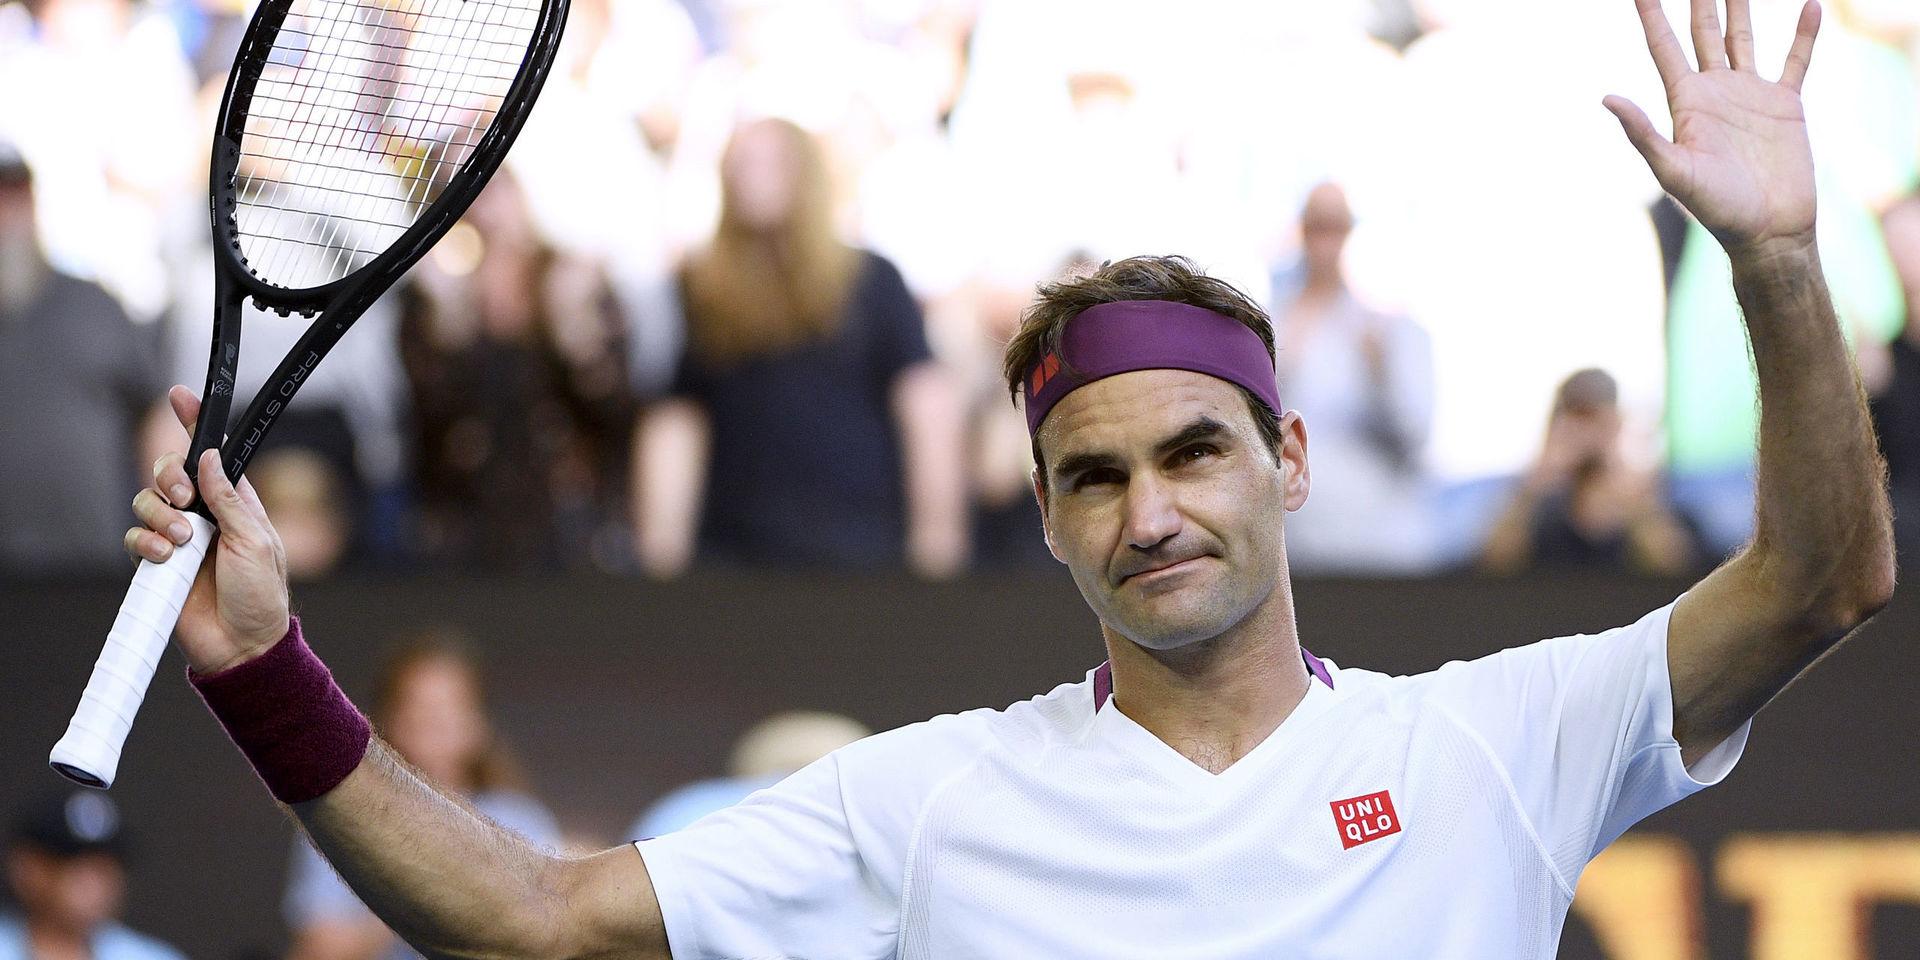 Roger Federer möter Novak Djokovic i semifinal efter en mirakelvändning i kvartsfinal.